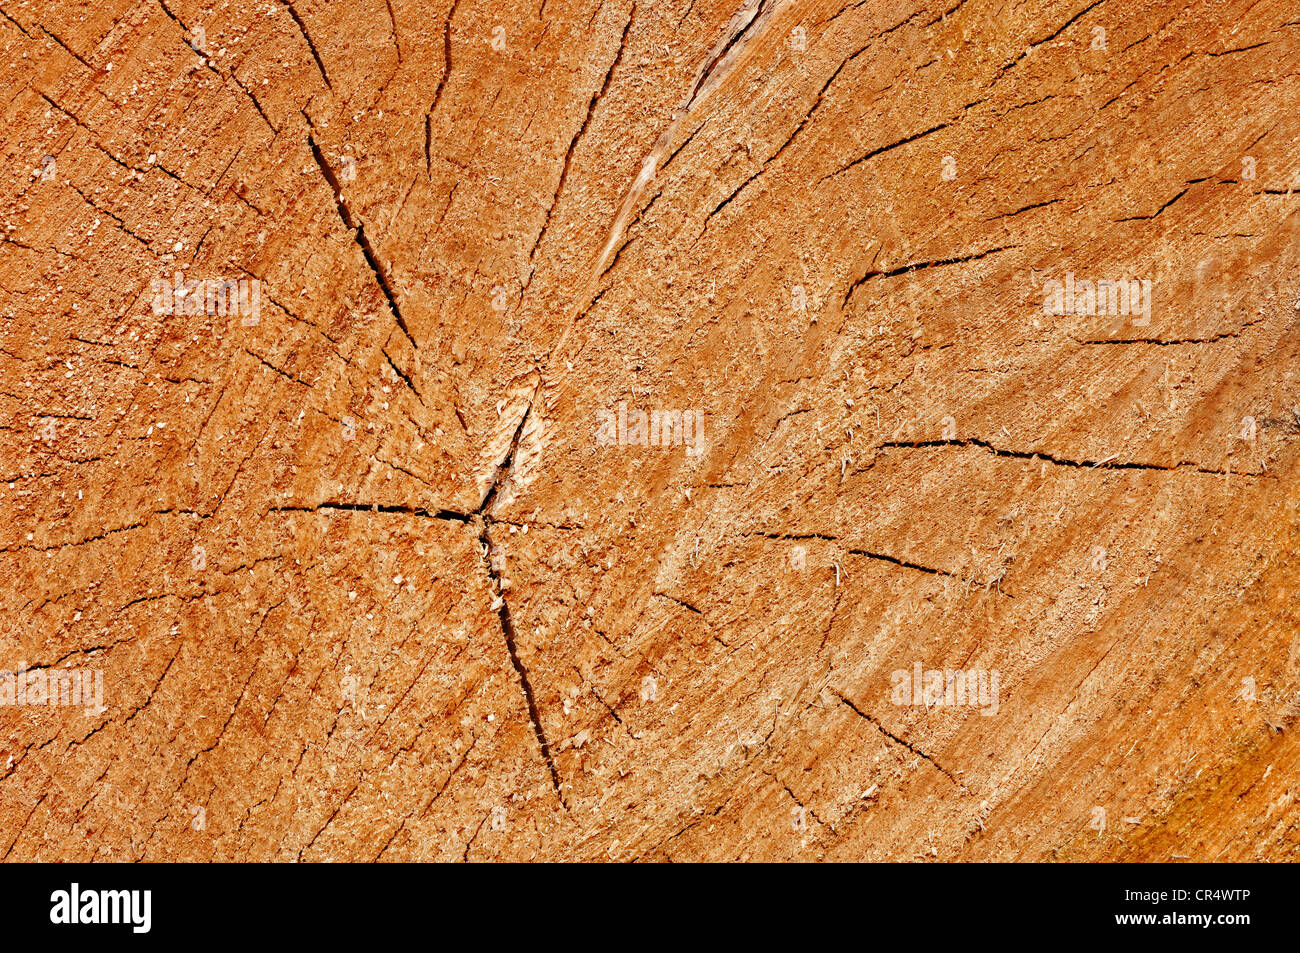 Il legno, la sezione trasversale del tronco di un albero, della Renania settentrionale-Vestfalia, Germania, Europa Foto Stock